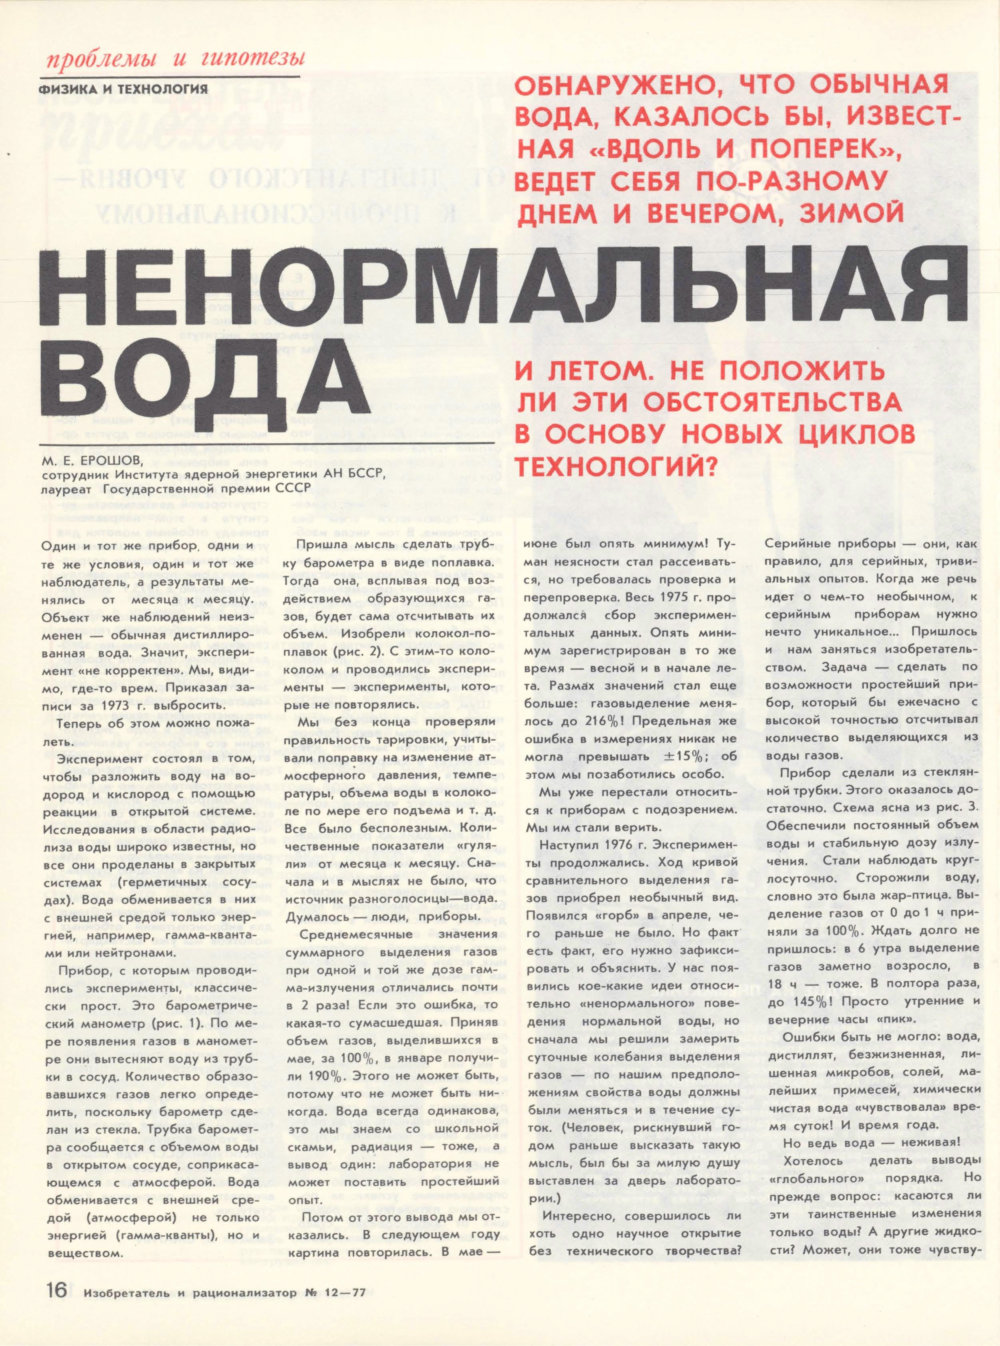 Ненормальная вода. М.Е. Ерошов. Изобретатель и рационализатор, 1977, №12, с.16-17. Фотокопия №1